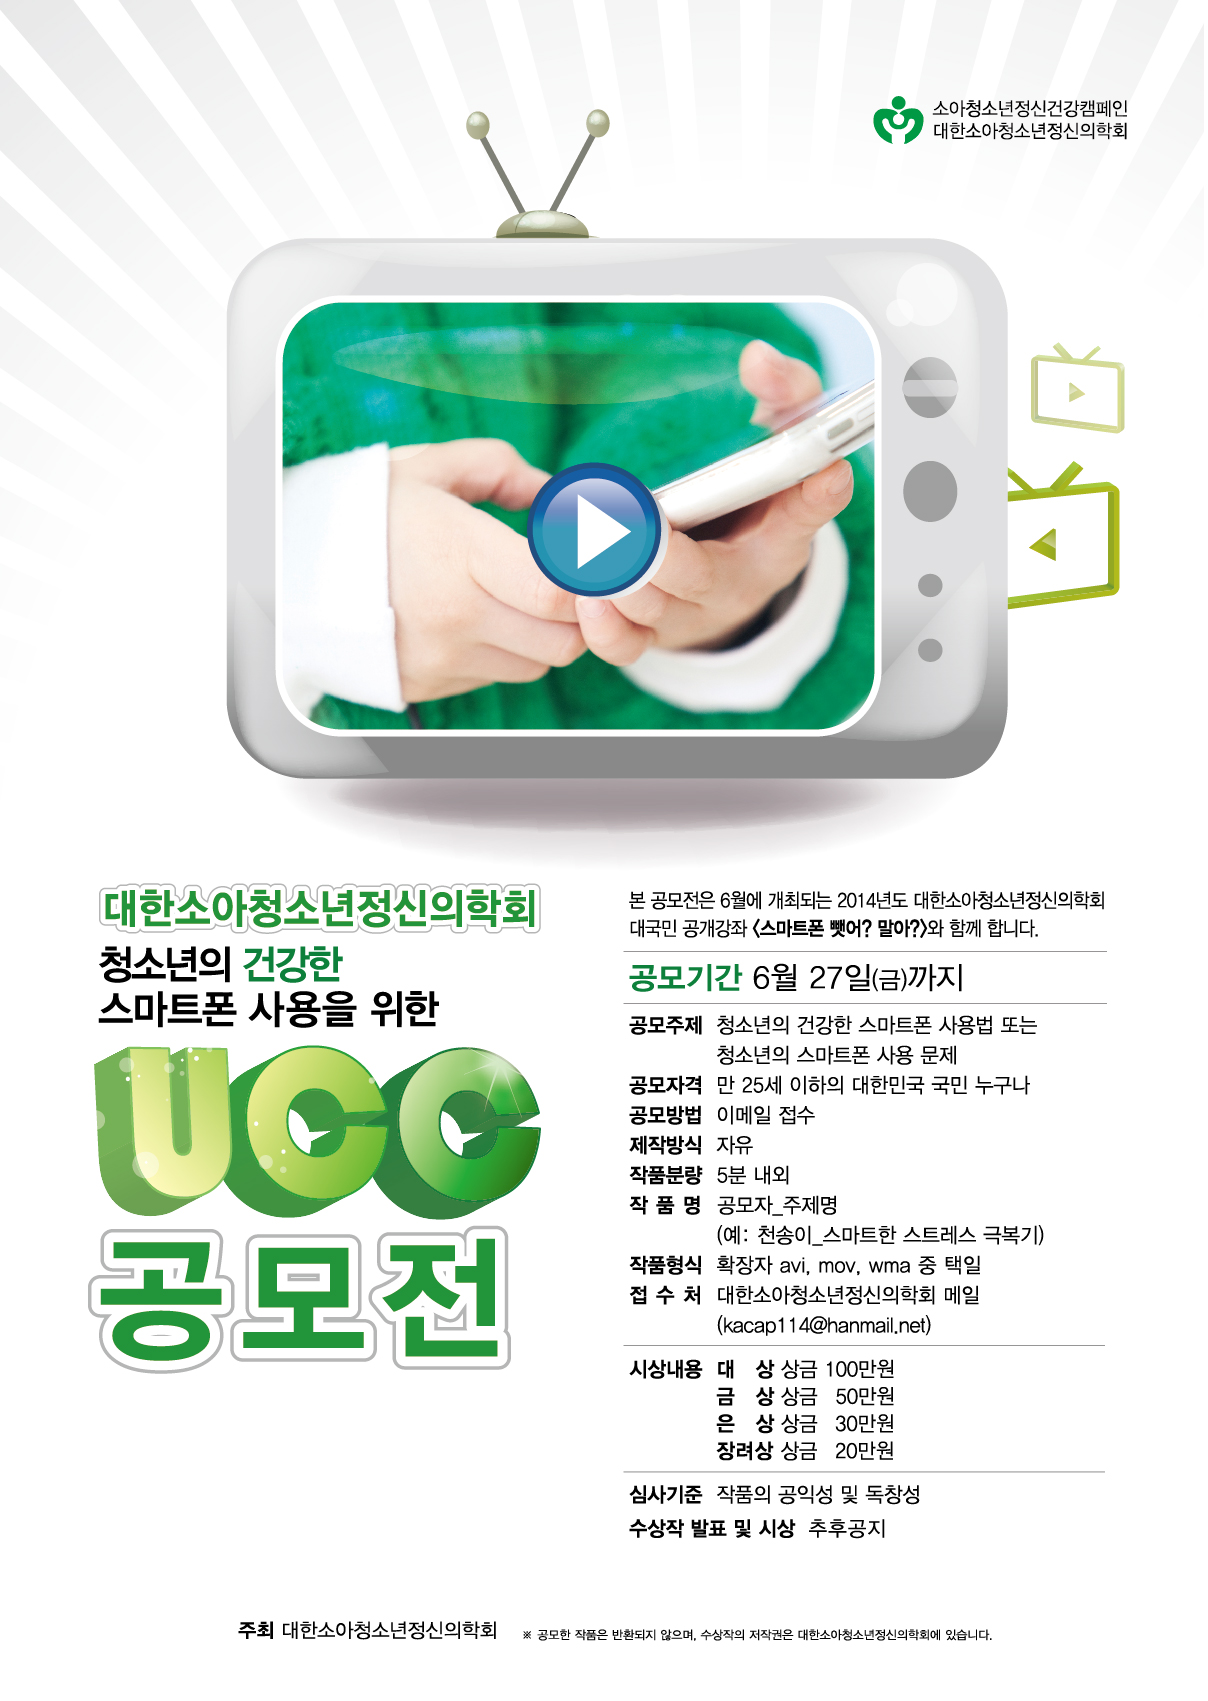 청소년의 건강한 스마트폰 사용을 위한 UCC 공모전